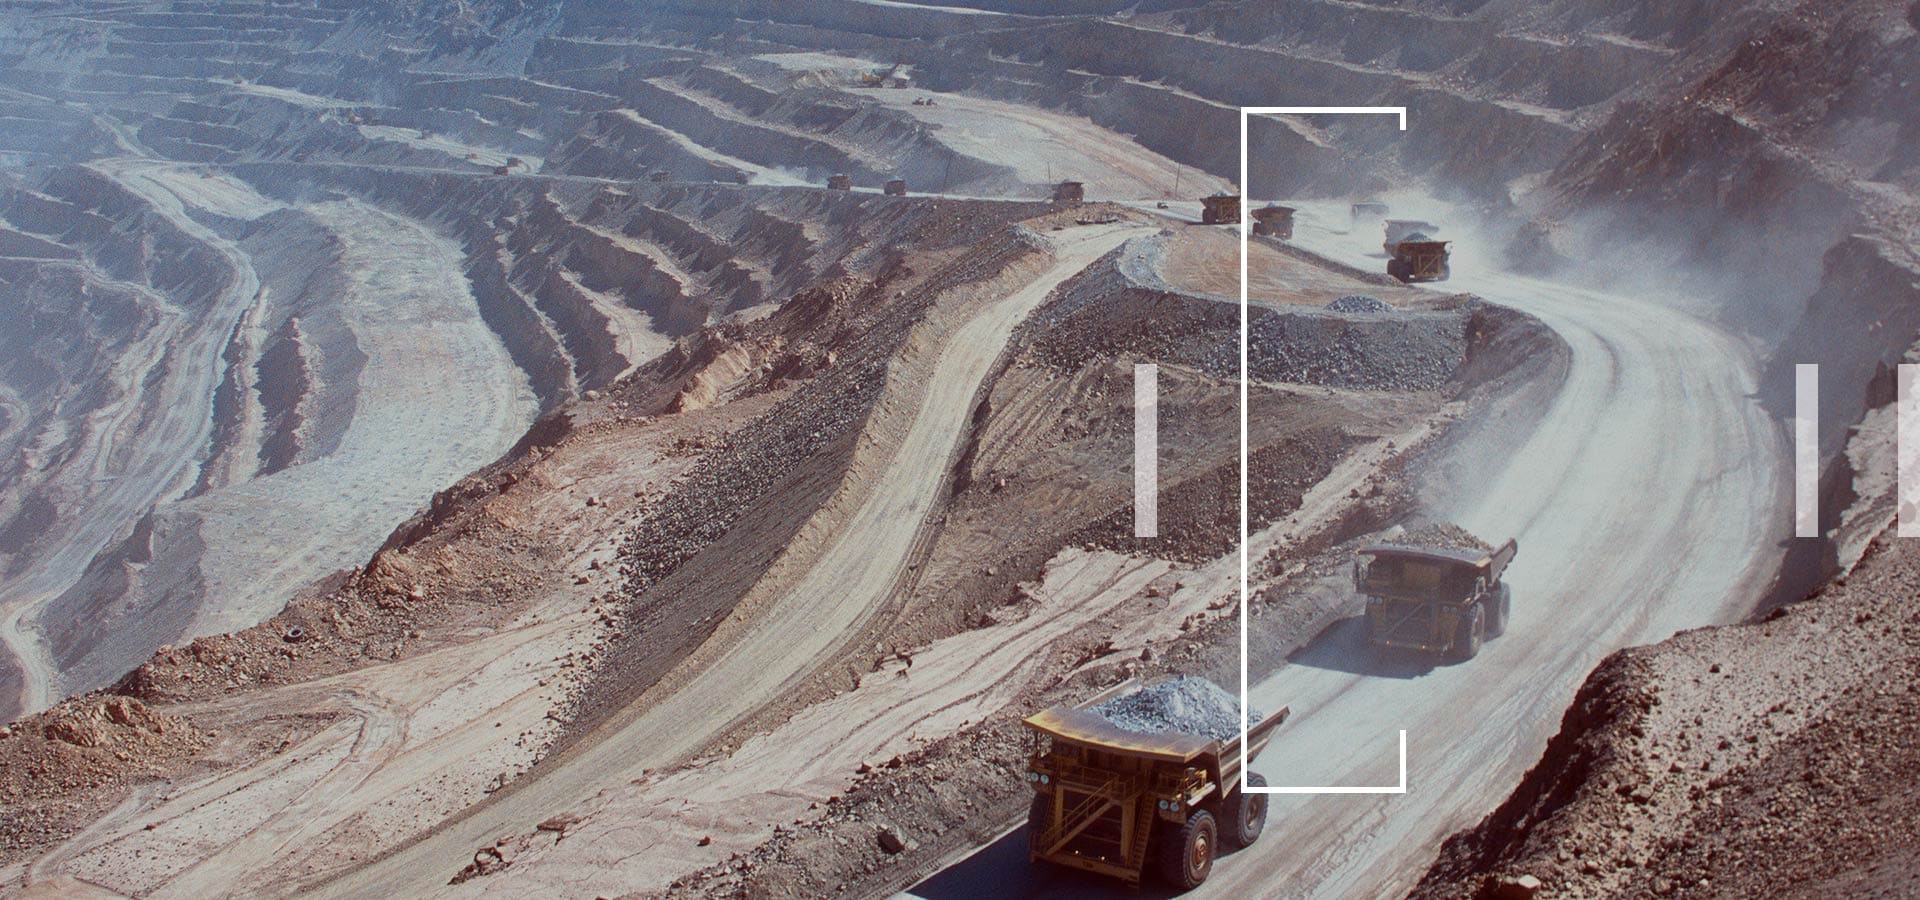 为一家全球矿业公司从航空图像中识别道路特征